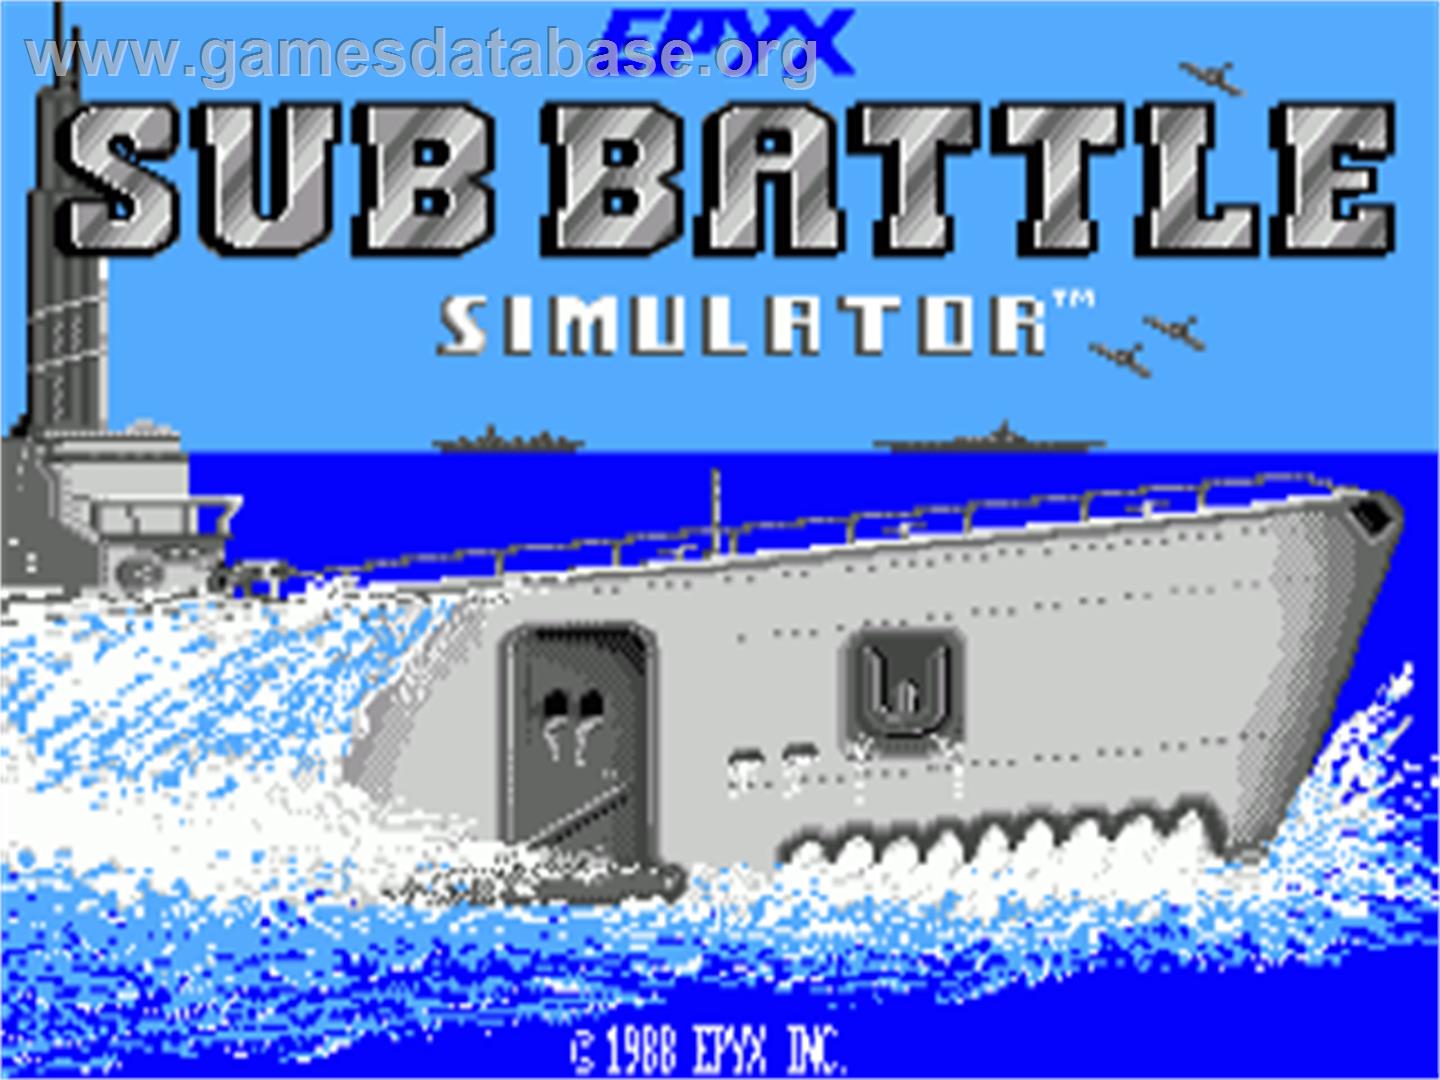 Sub Battle Simulator - Commodore Amiga - Artwork - Title Screen